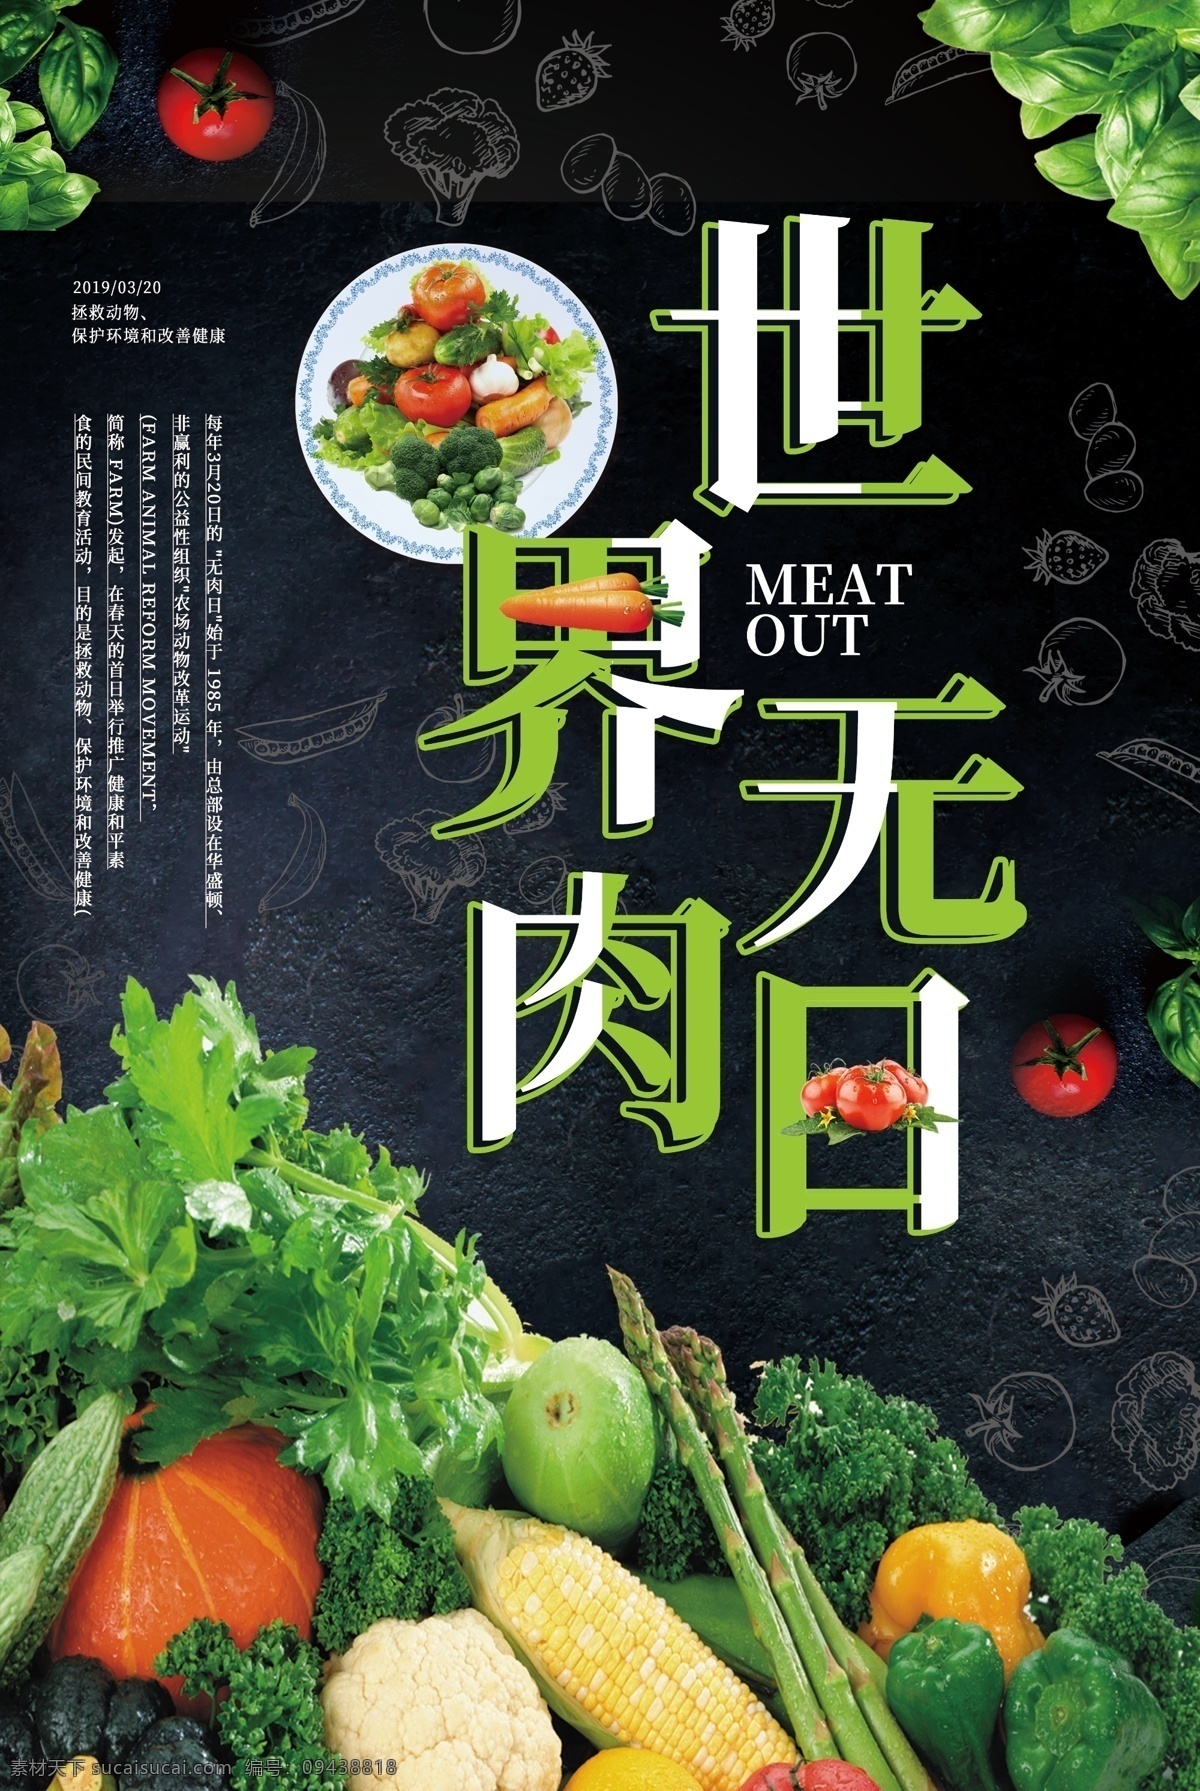 大气 世界 无 肉 日 海报 世界无肉日 保护环境 健康 无肉日 爱护动物 素食 保护动物 蔬菜 素食主义 蔬菜海报